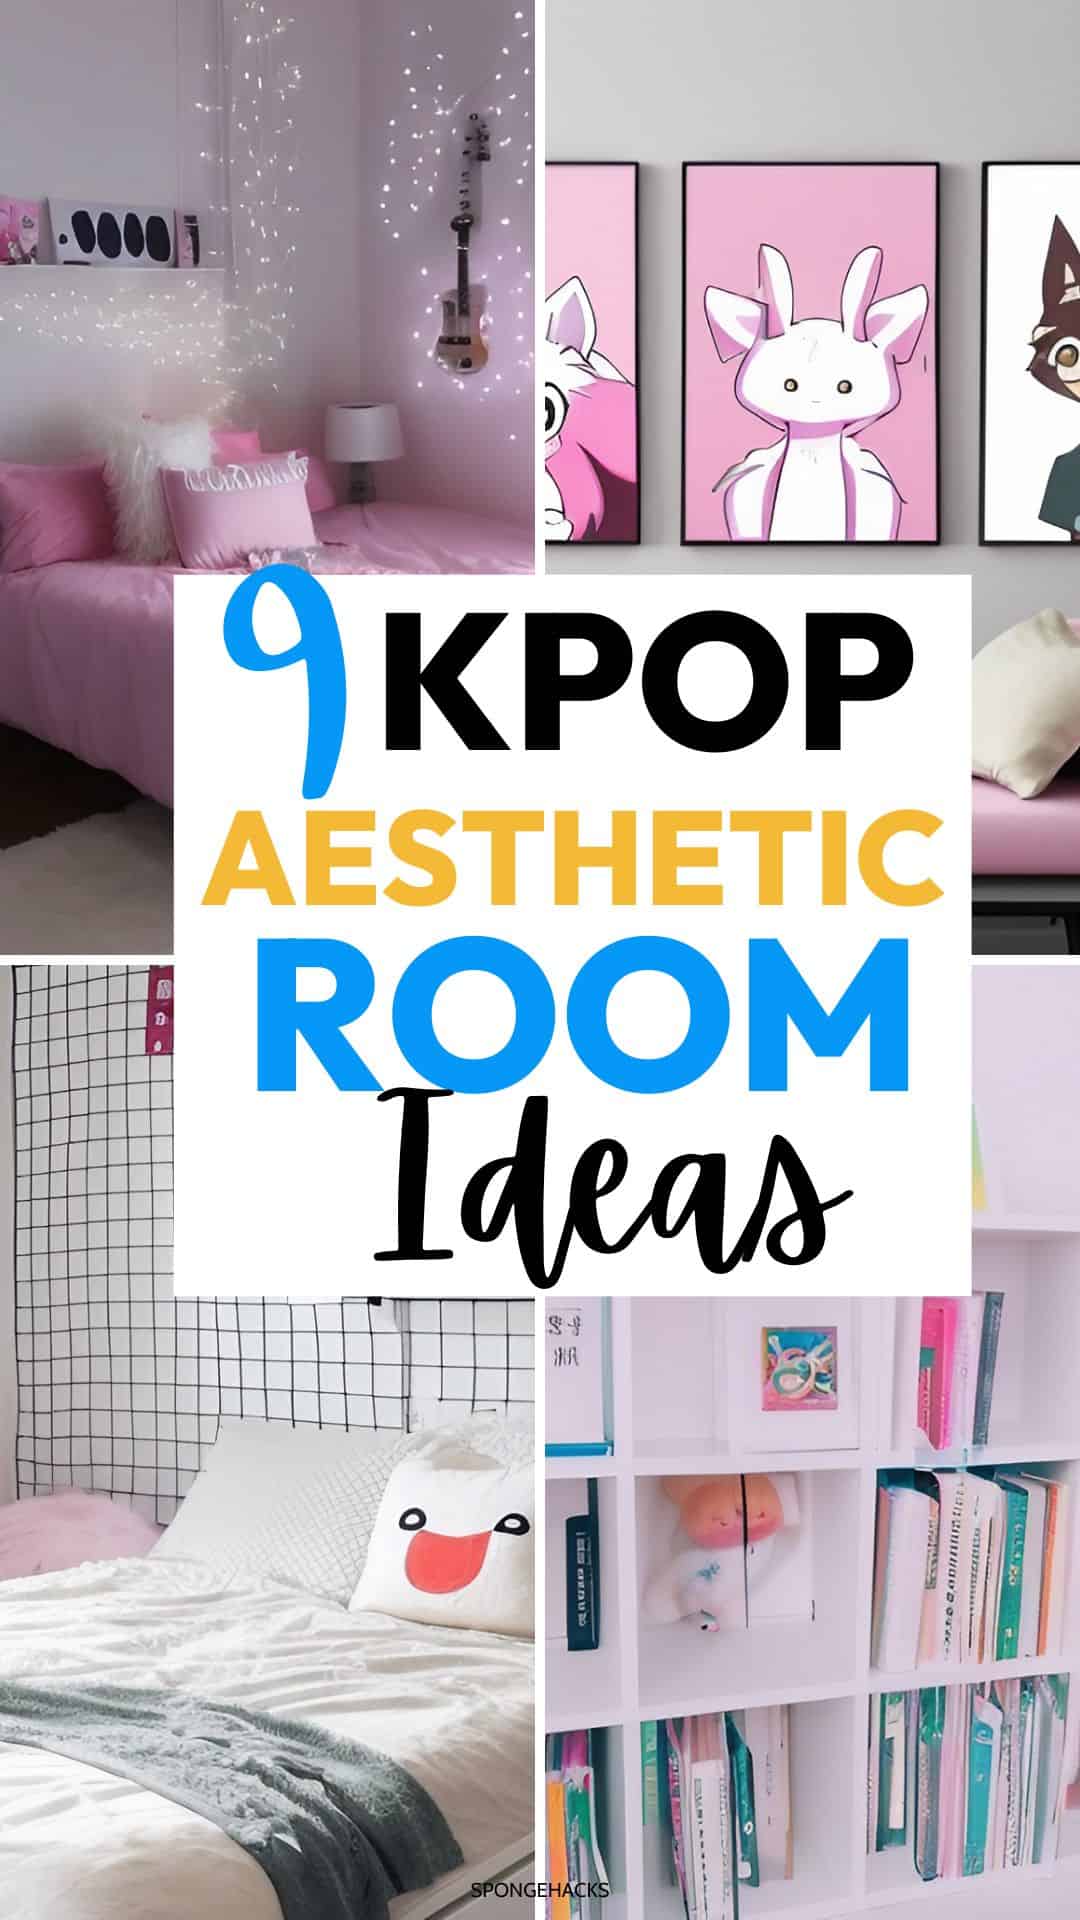 pin-kpop-aesthetic-room.jpg